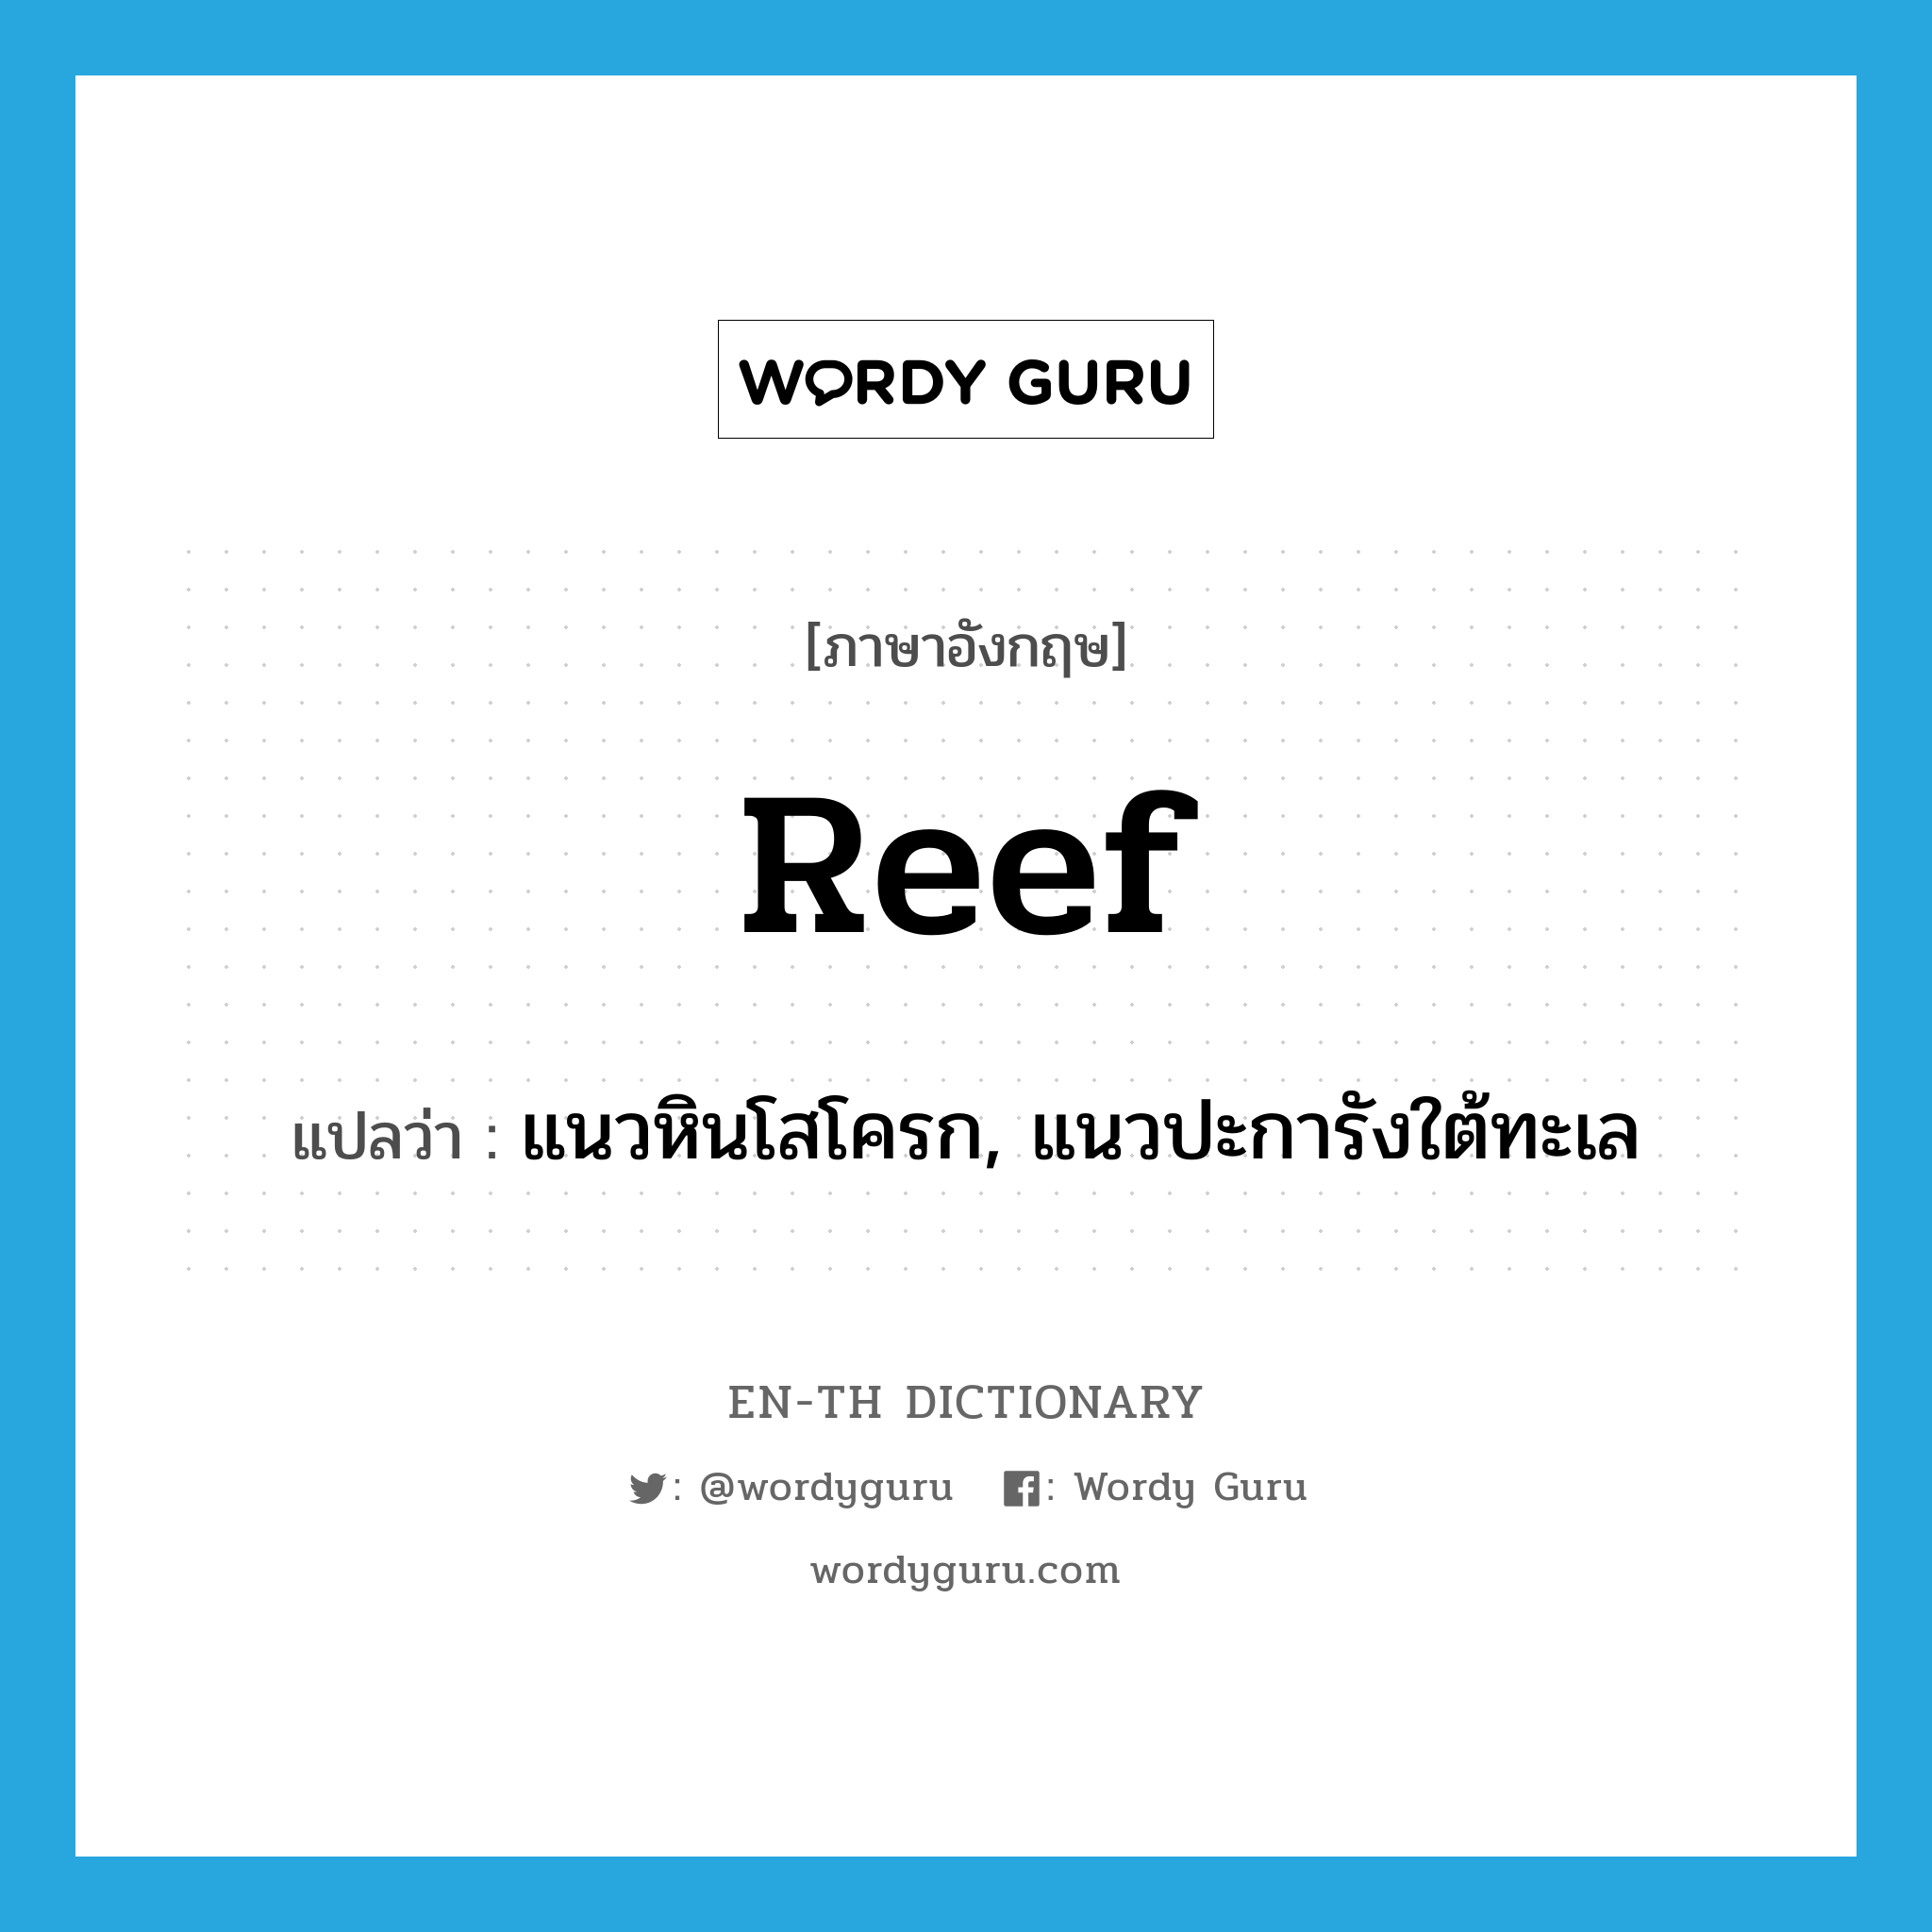 reef แปลว่า?, คำศัพท์ภาษาอังกฤษ reef แปลว่า แนวหินโสโครก, แนวปะการังใต้ทะเล ประเภท N หมวด N